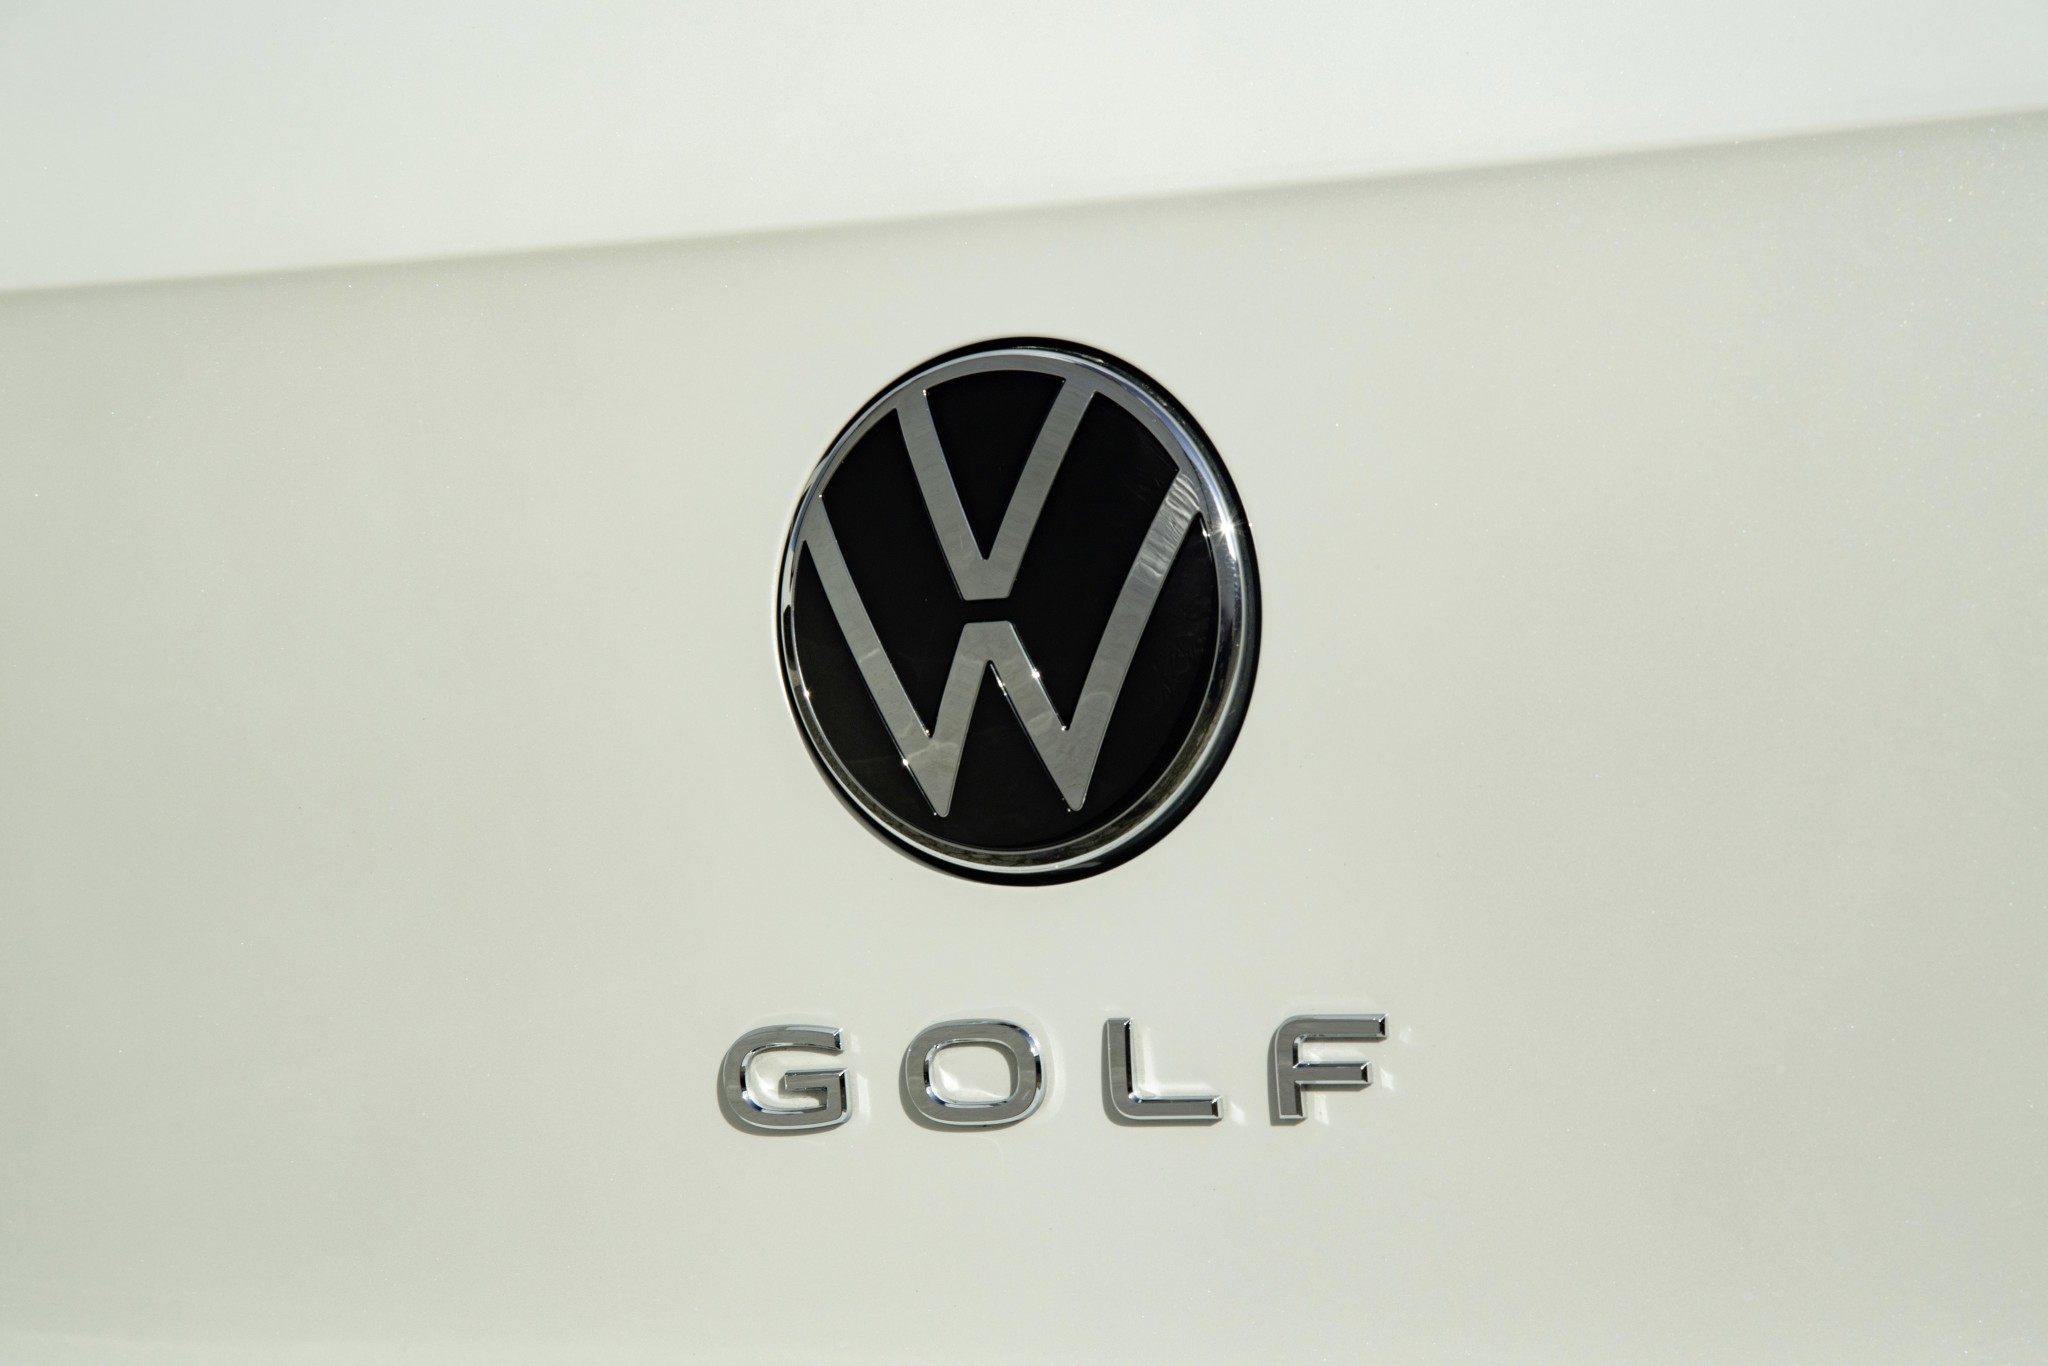 Cambio de logo de Volkswagen: historia y significado - Carhaus